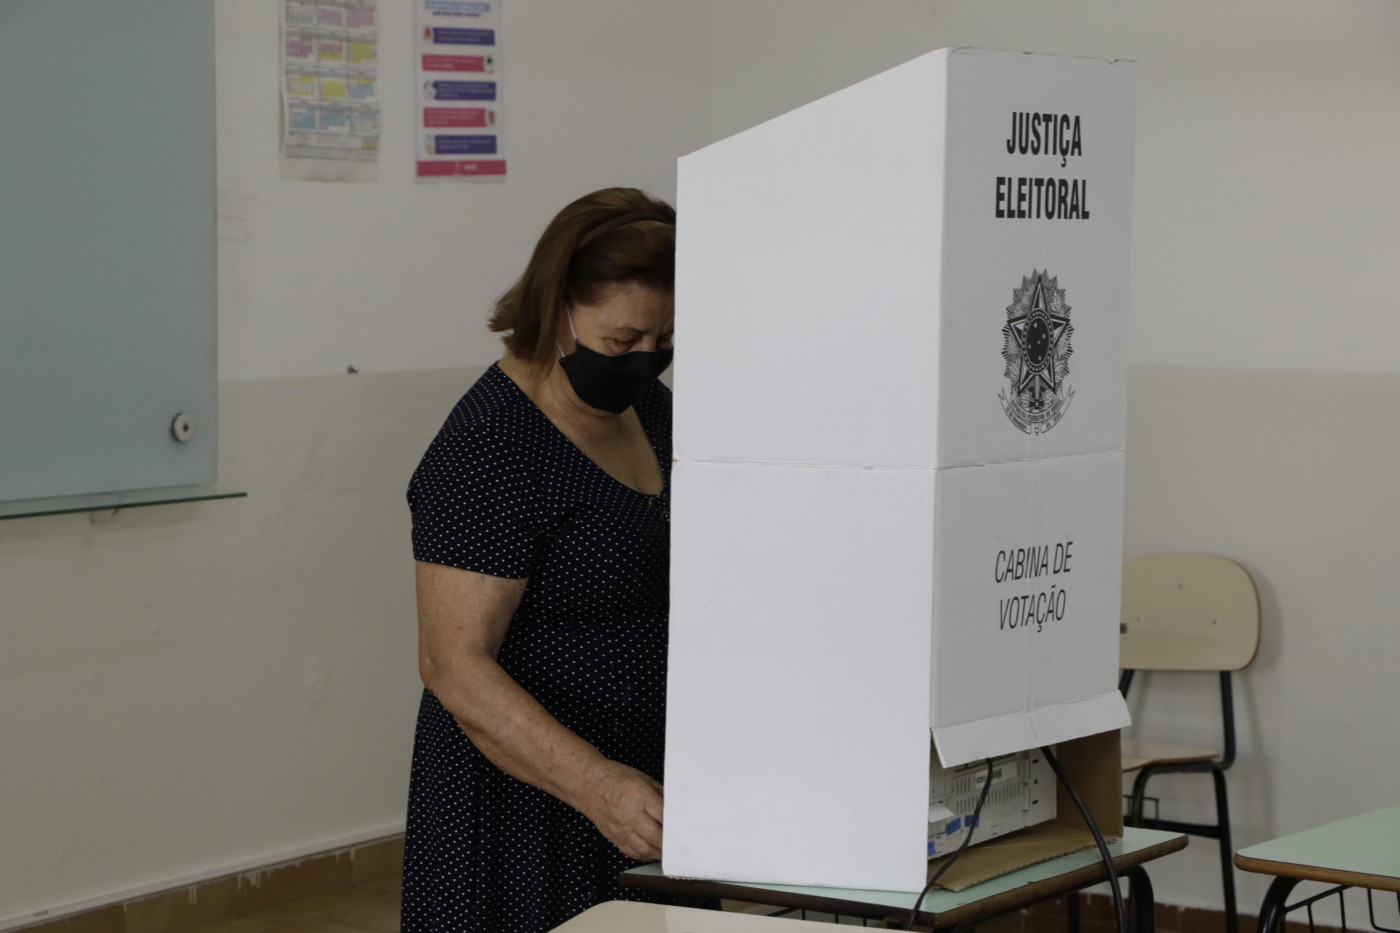 Pessoa votando de máscara em uma urna eleitoral